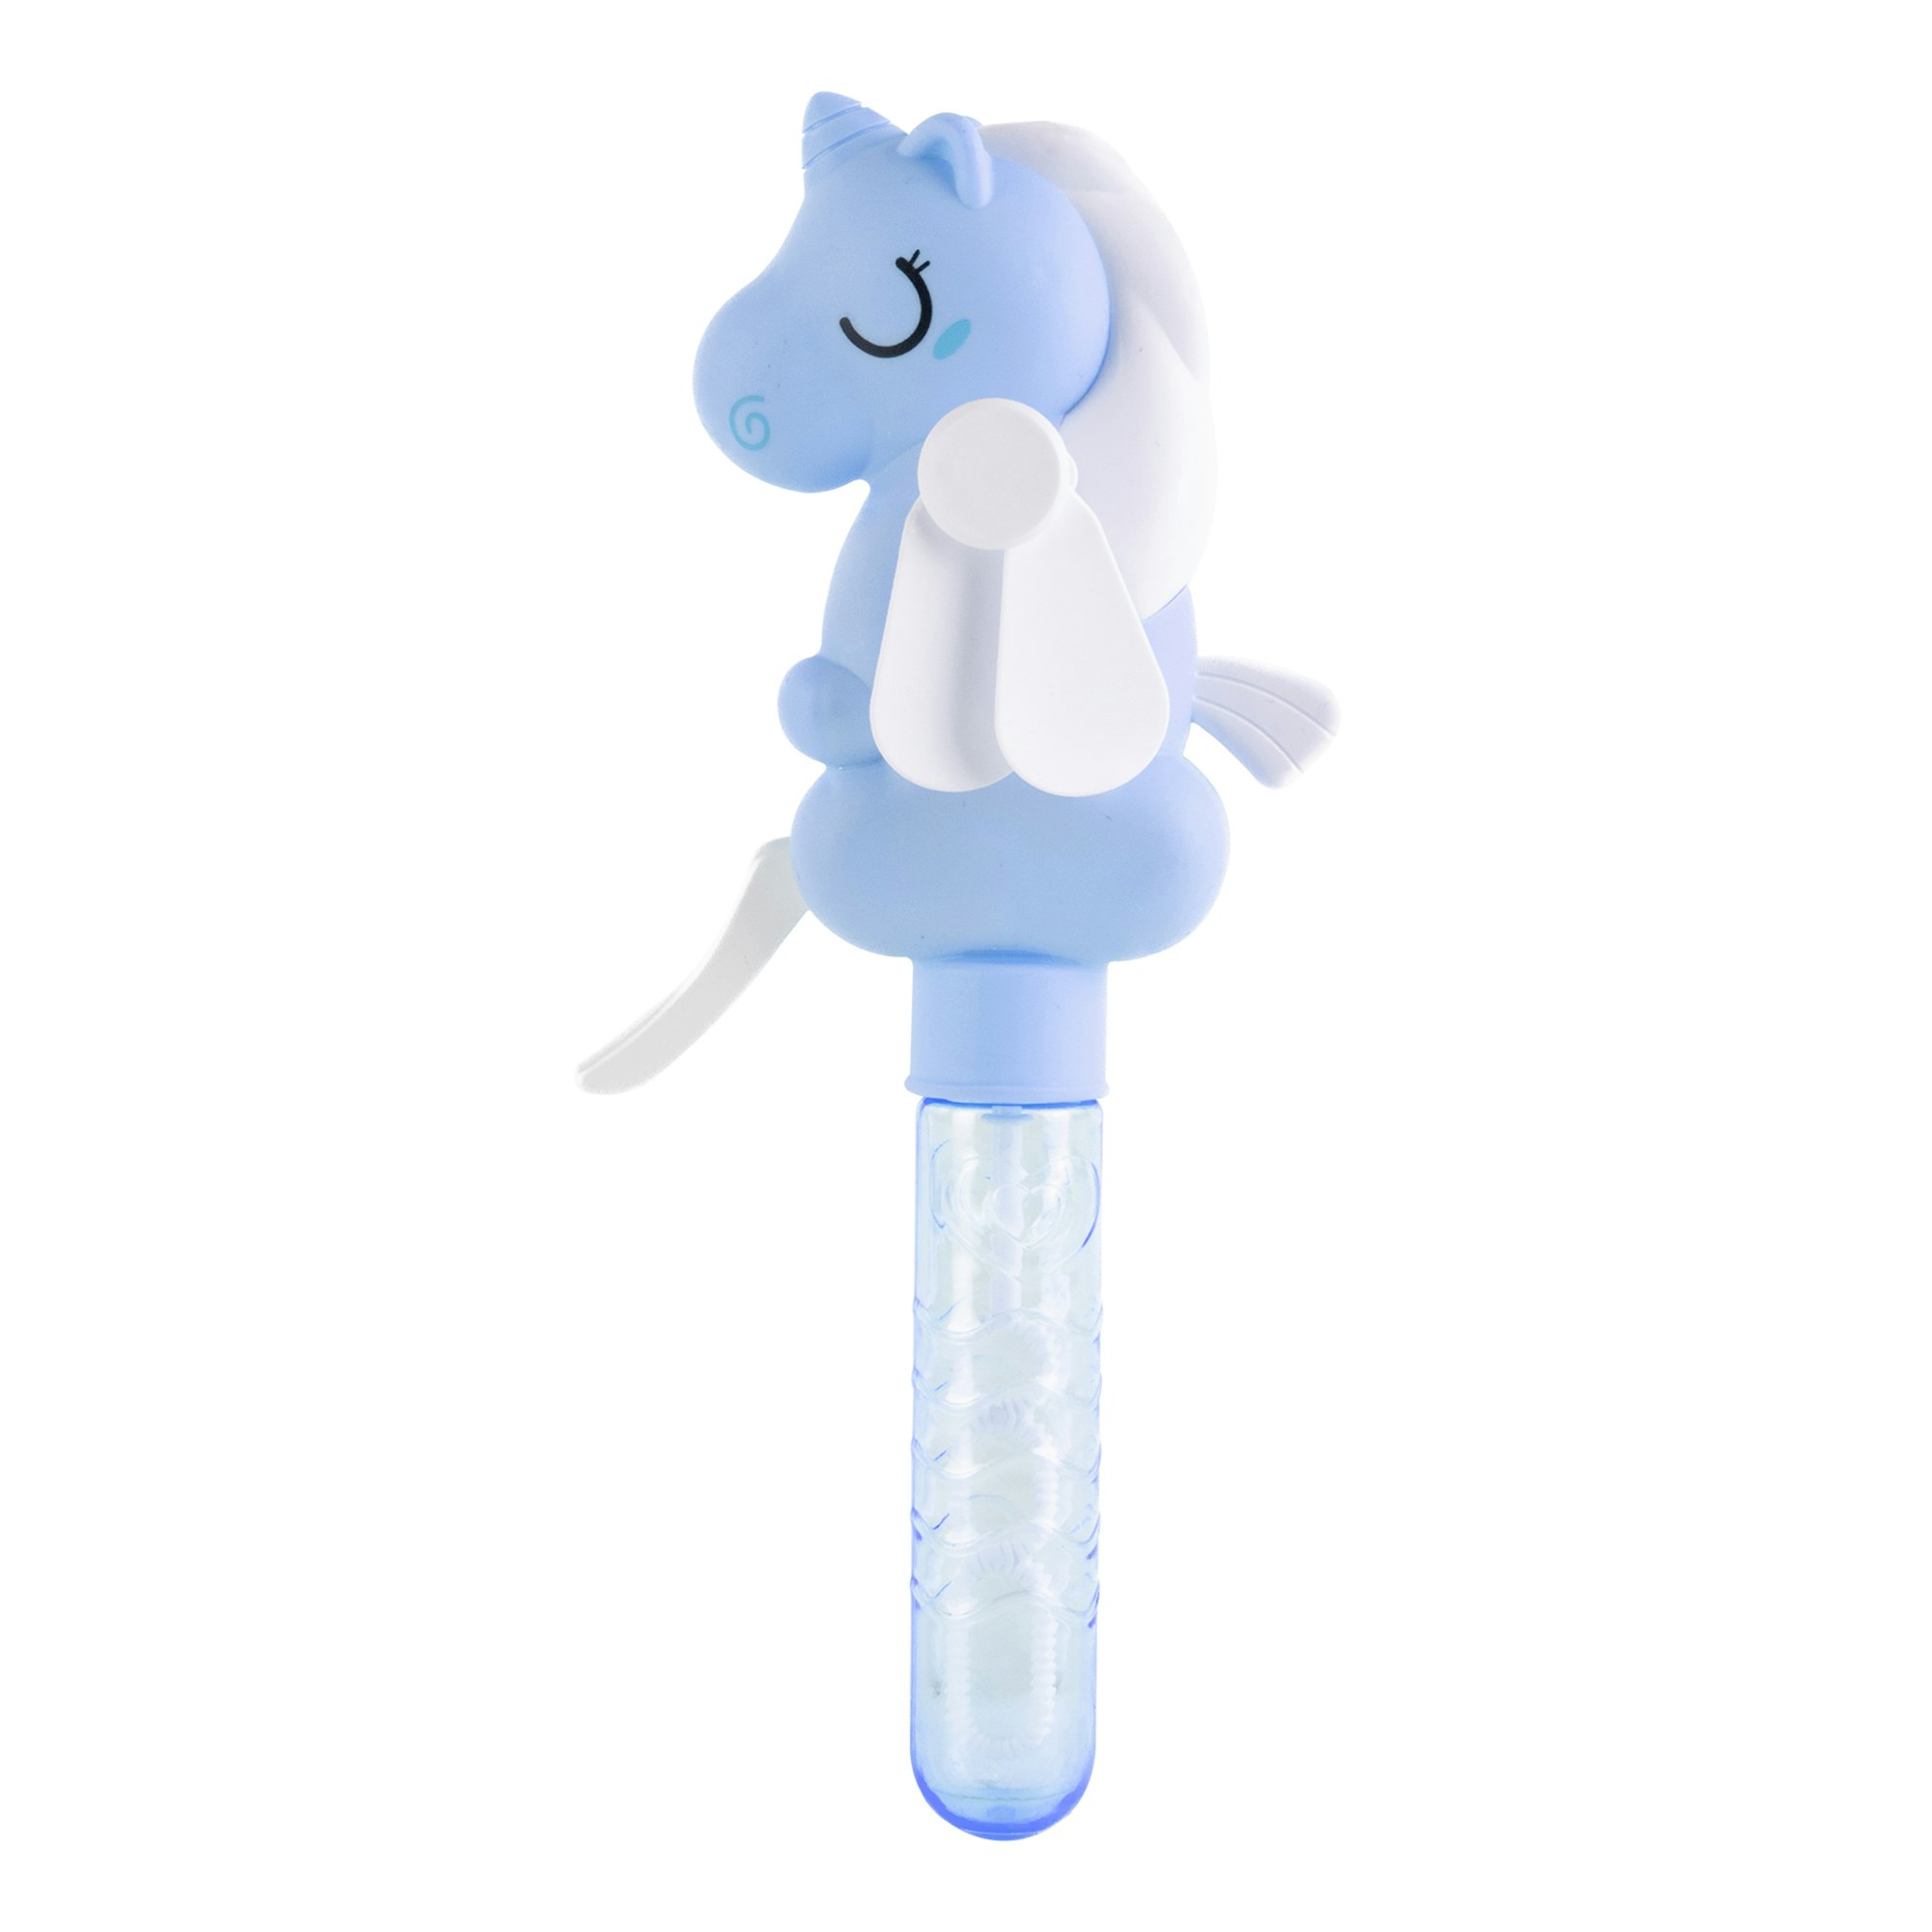 KEYCRAFT- Unicorn Fan Bubbles/ såpbubblor och liten fläkt i ett